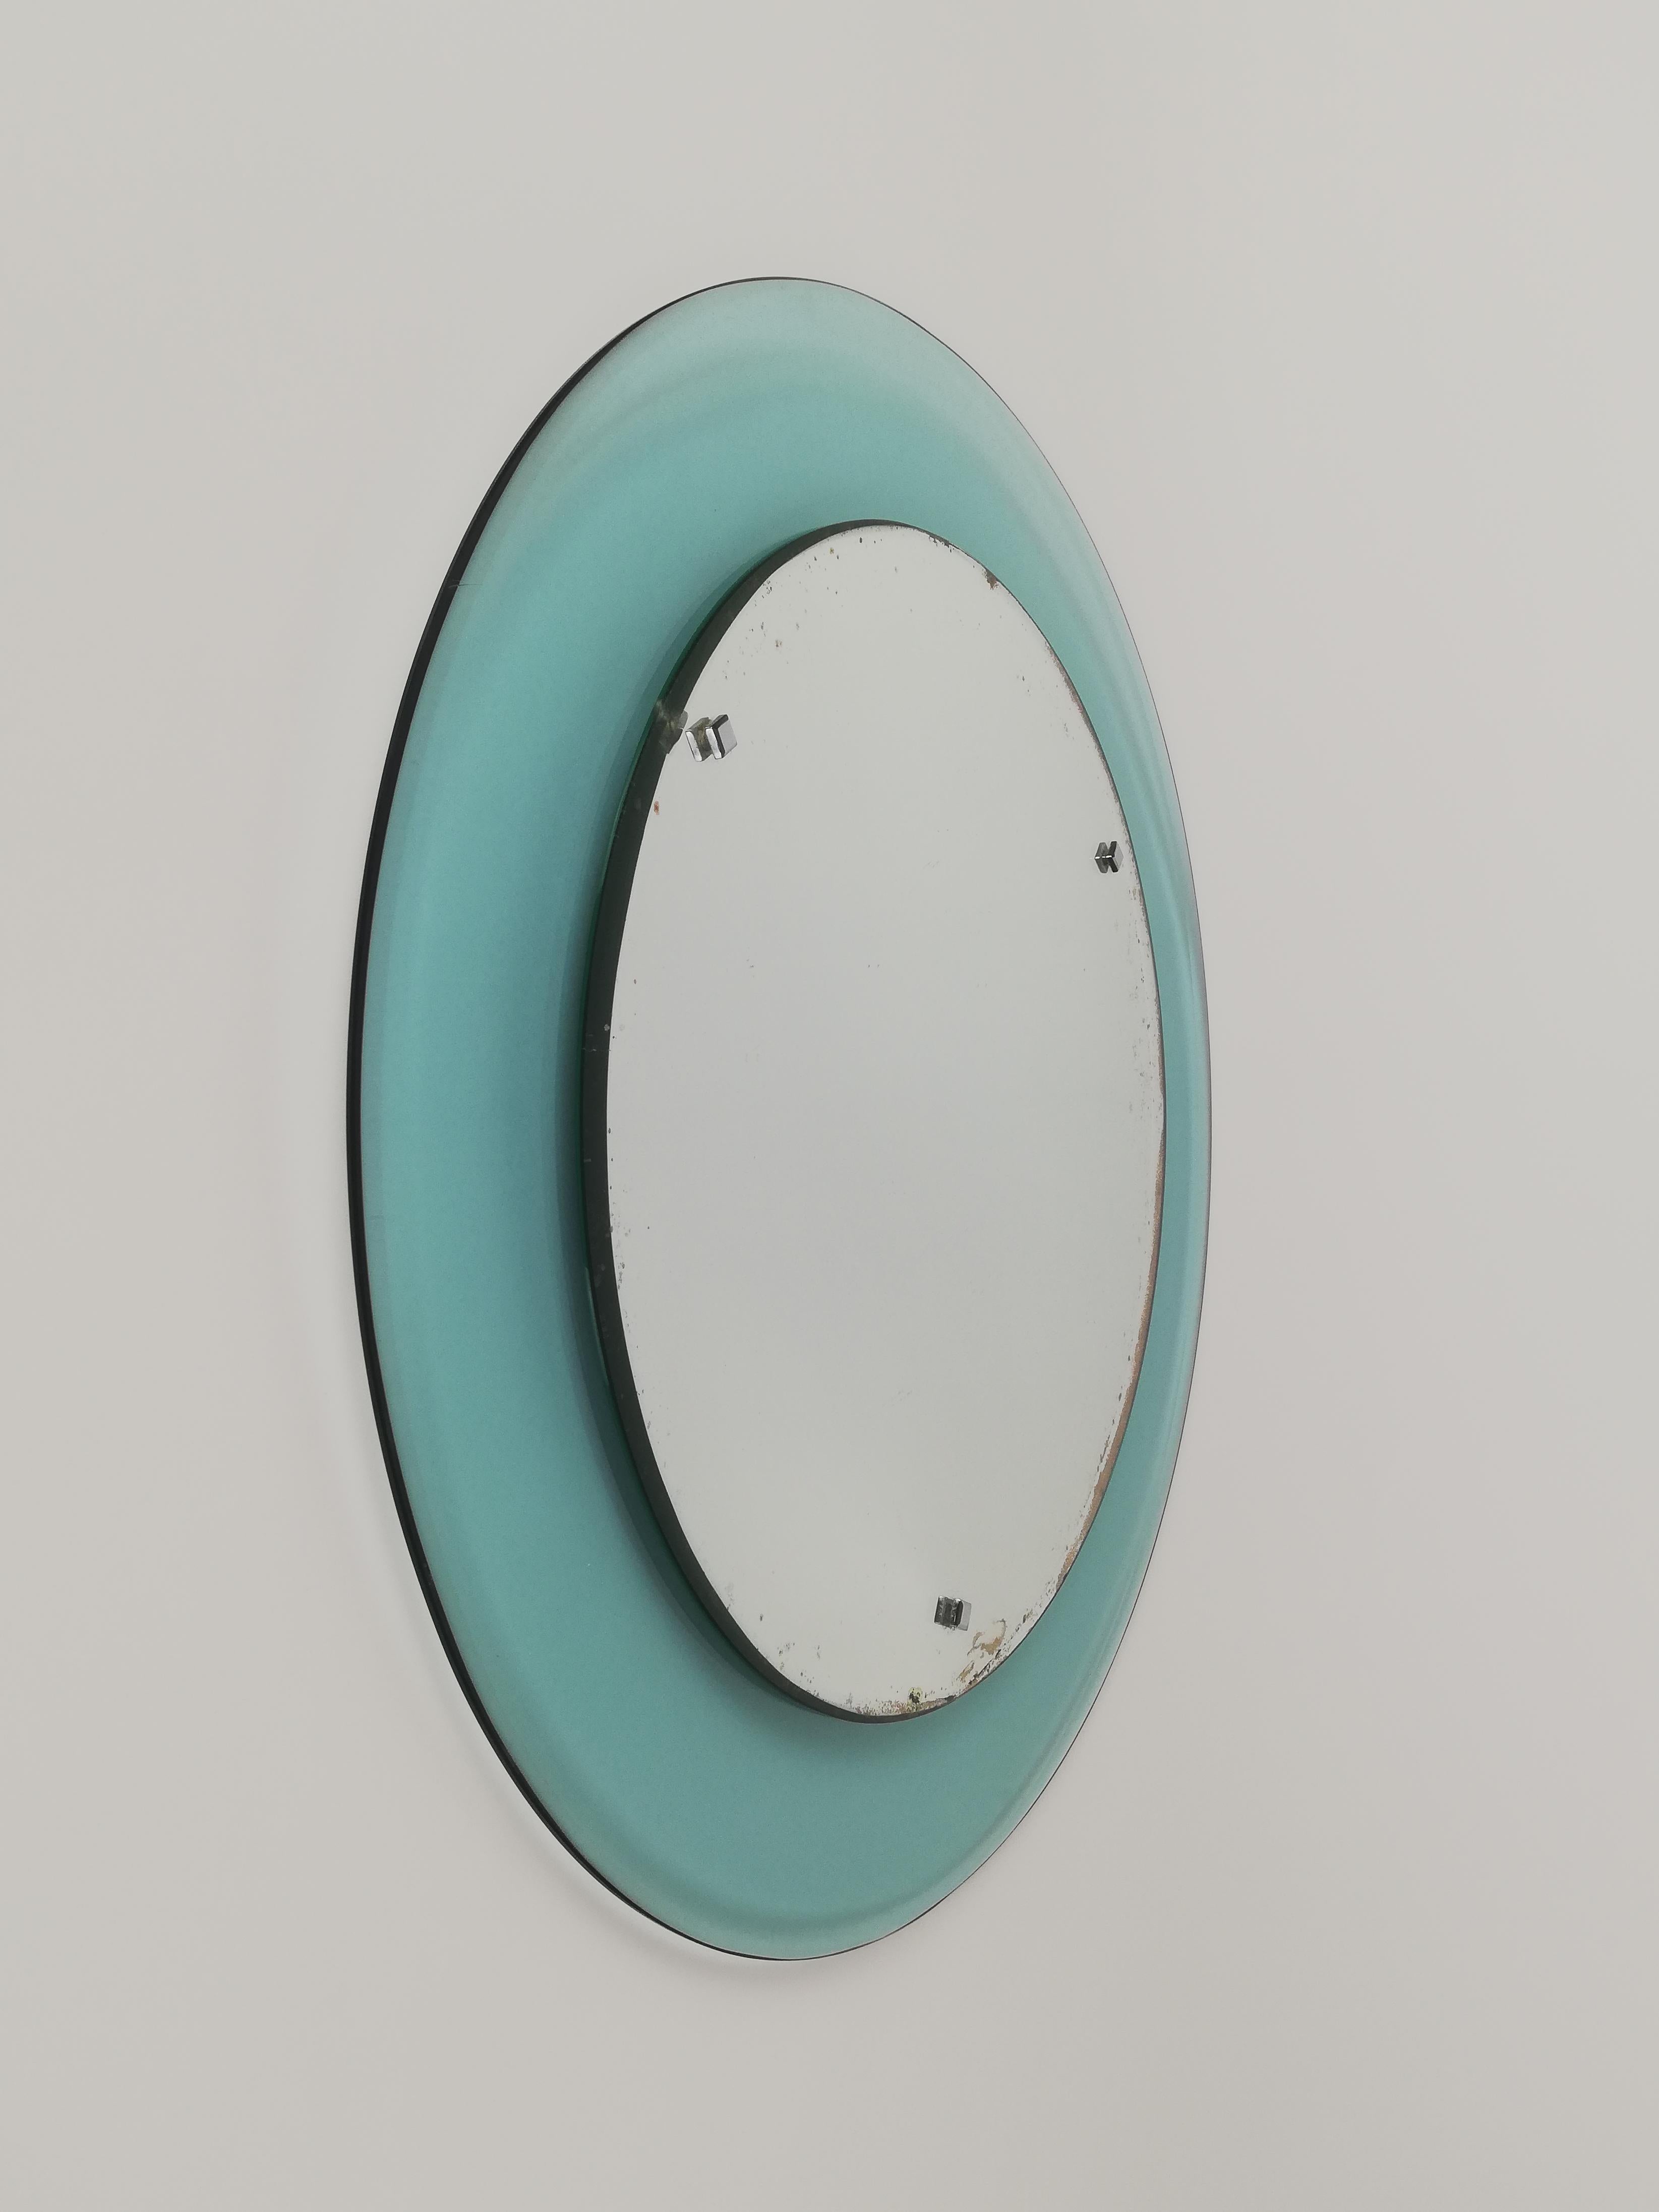 Ein runder Spiegel aus der Jahrhundertmitte, hergestellt in Italien und datierbar zwischen den 60er und 70er Jahren.
Dieser Vintage-Glasspiegel ist für die bei der Herstellung verwendeten MATERIALIEN der Firma Veca zuzuschreiben.
Der runde Rahmen